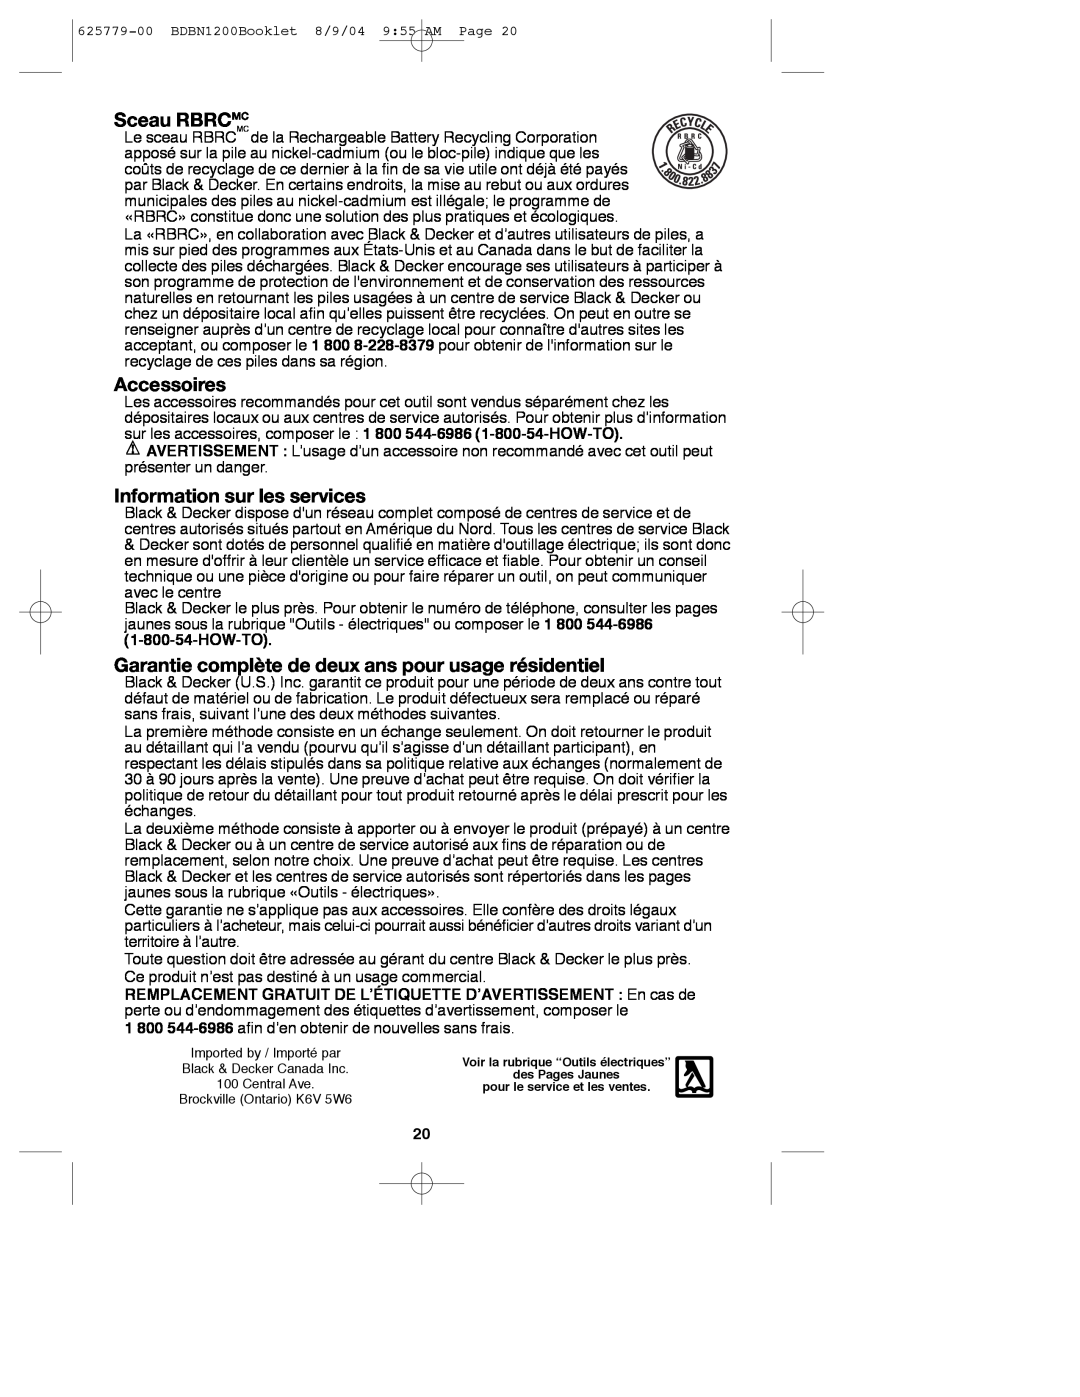 Black & Decker 625779-00, BDBN1200 instruction manual Sceau RBRCMC, Accessoires, Information sur les services 